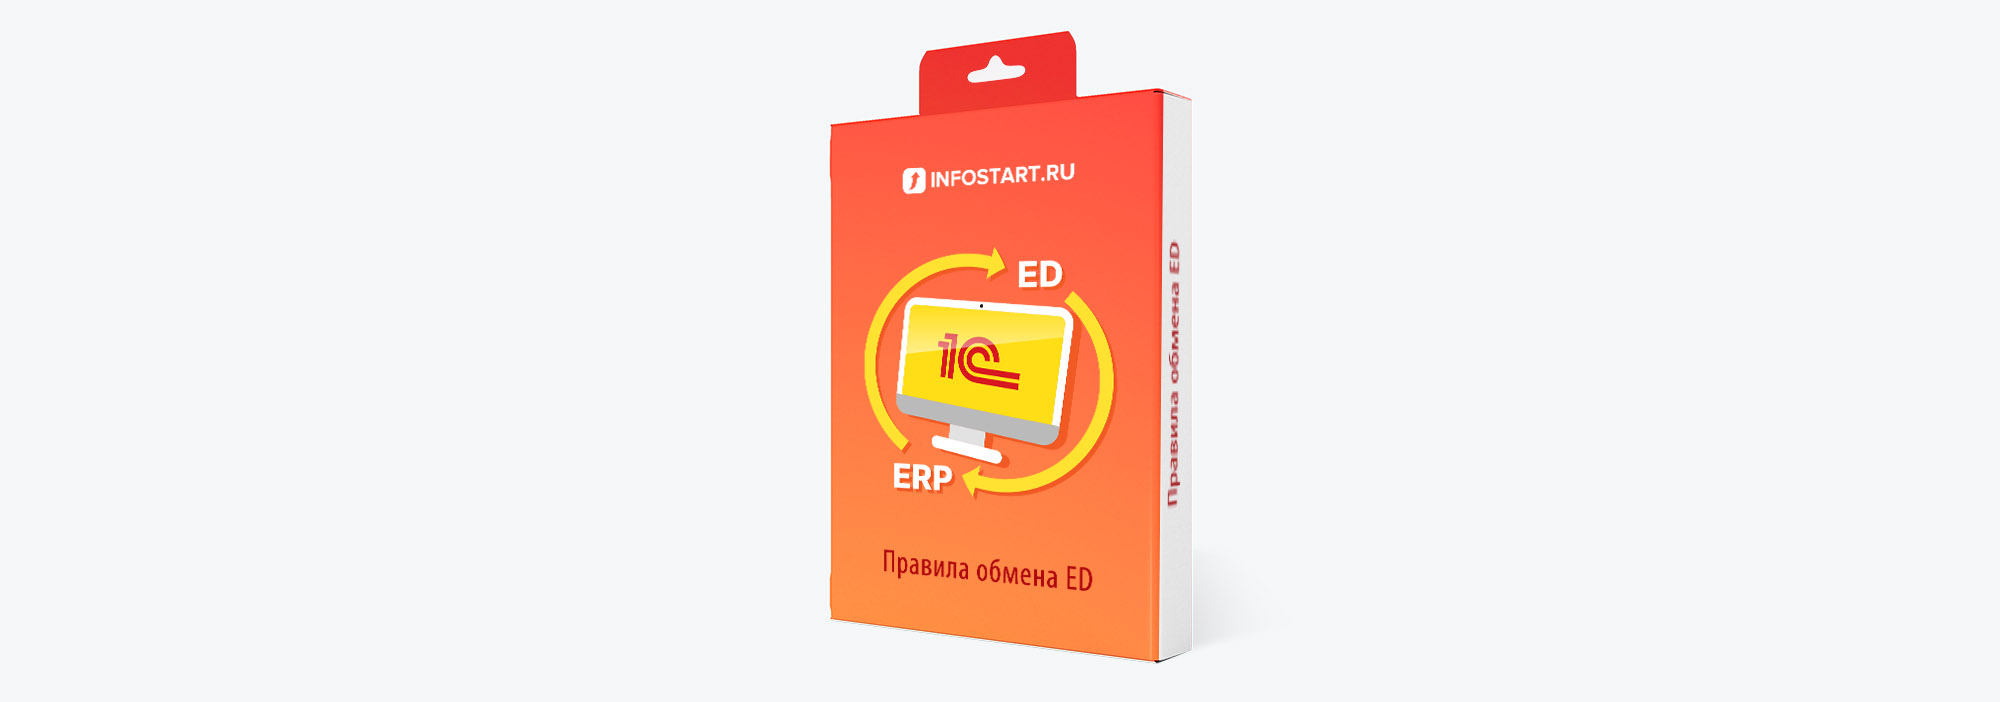 Правила обмена ED ERP